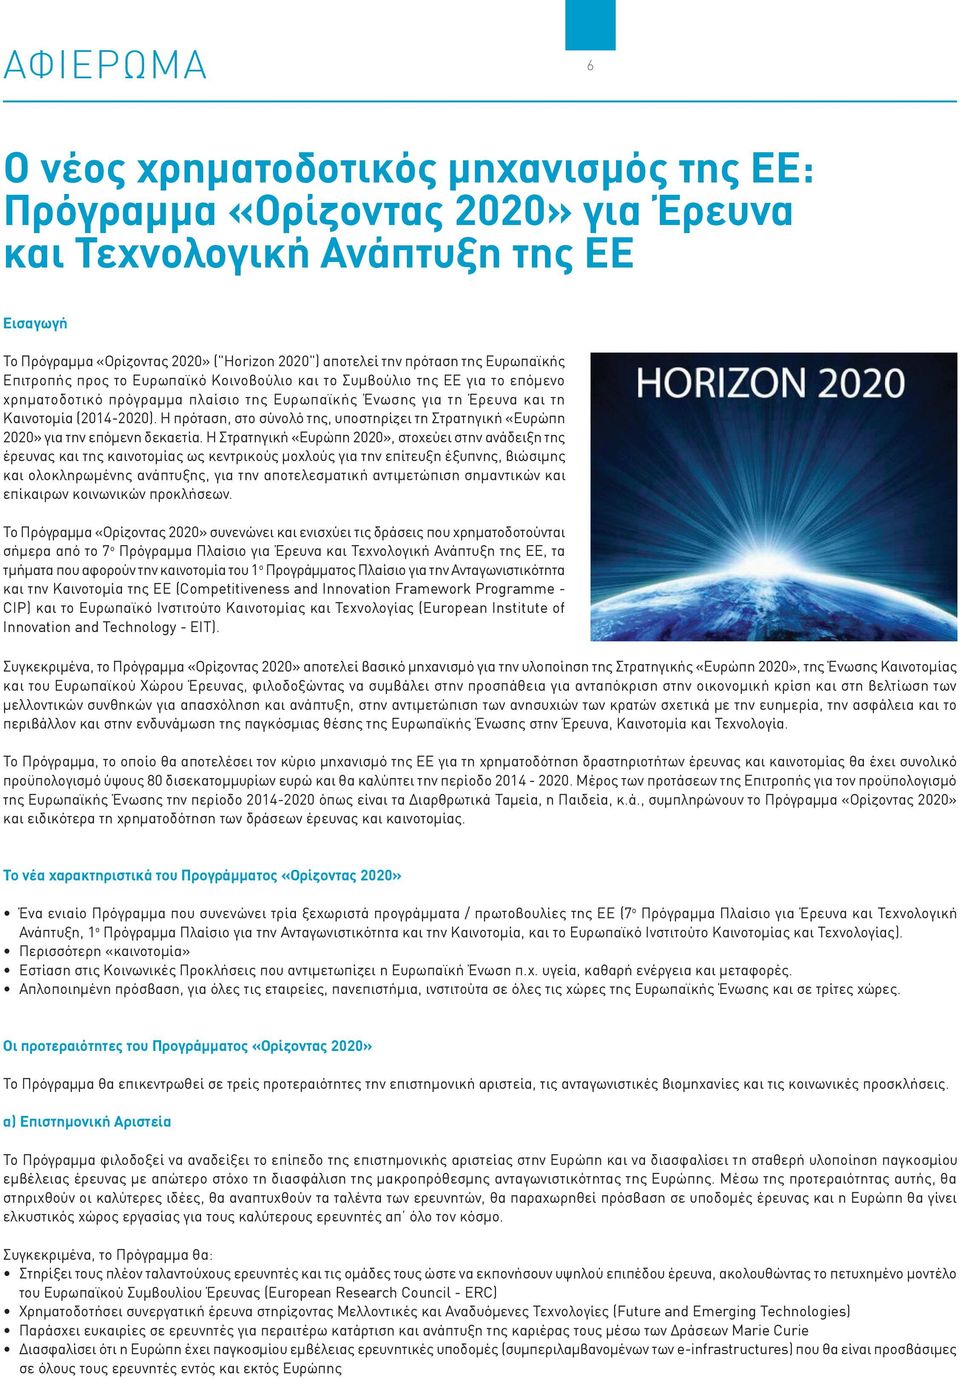 Η πρόταση, στο σύνολό της, υποστηρίζει τη Στρατηγική «Ευρώπη 2020» για την επόμενη δεκαετία.